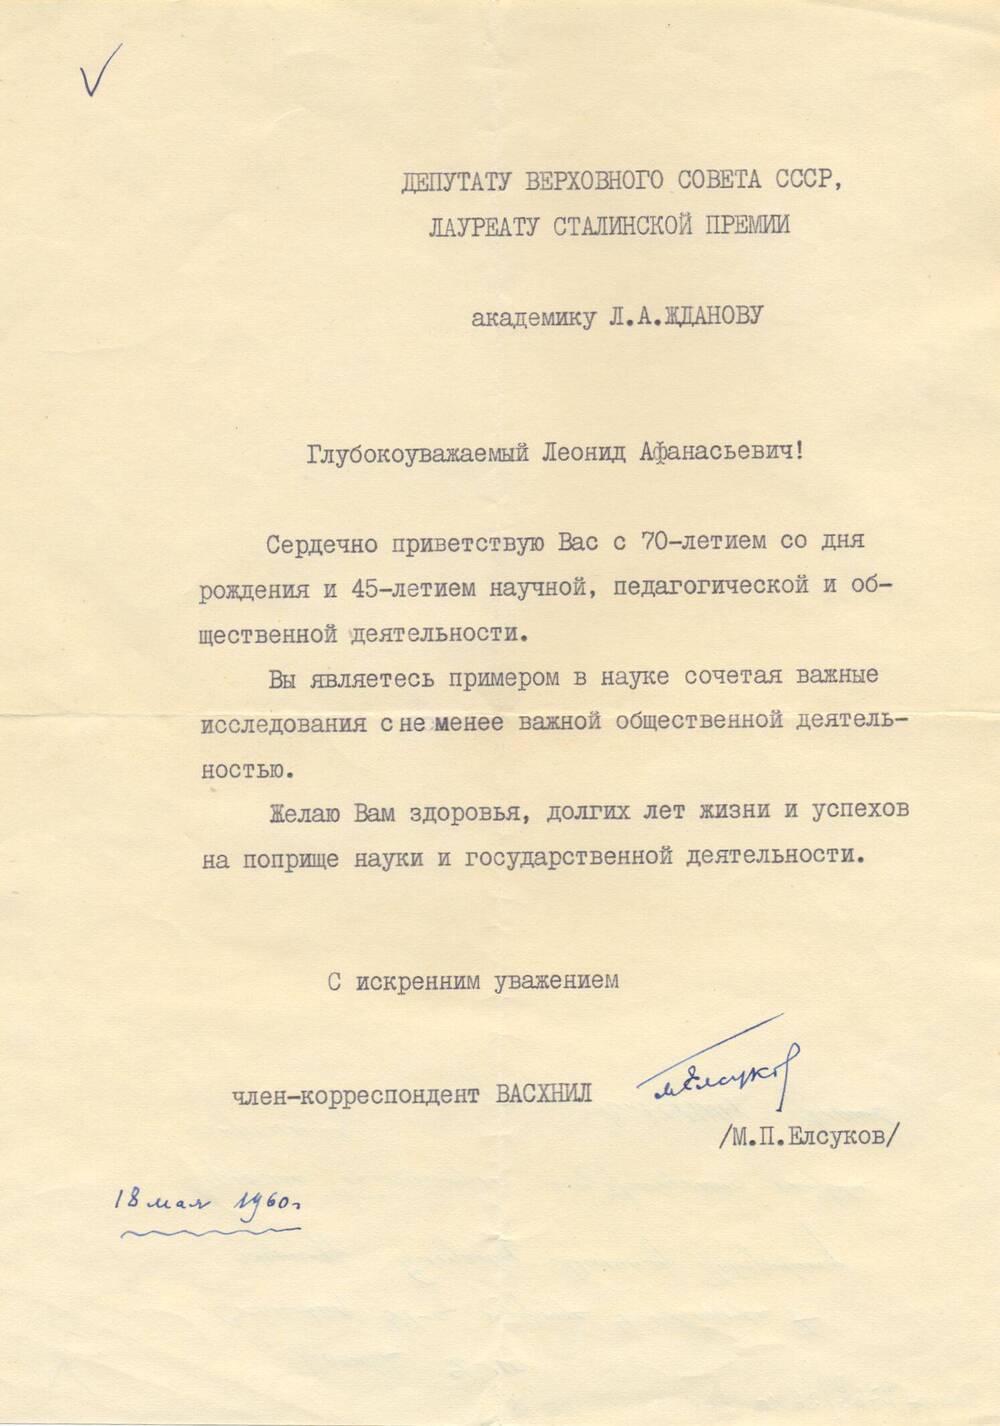 Поздравление Жданову Л.А. от Члена-корреспондента ВАСХНИЛ М.П. Елсукова в связи с 70-летием со дня рождения